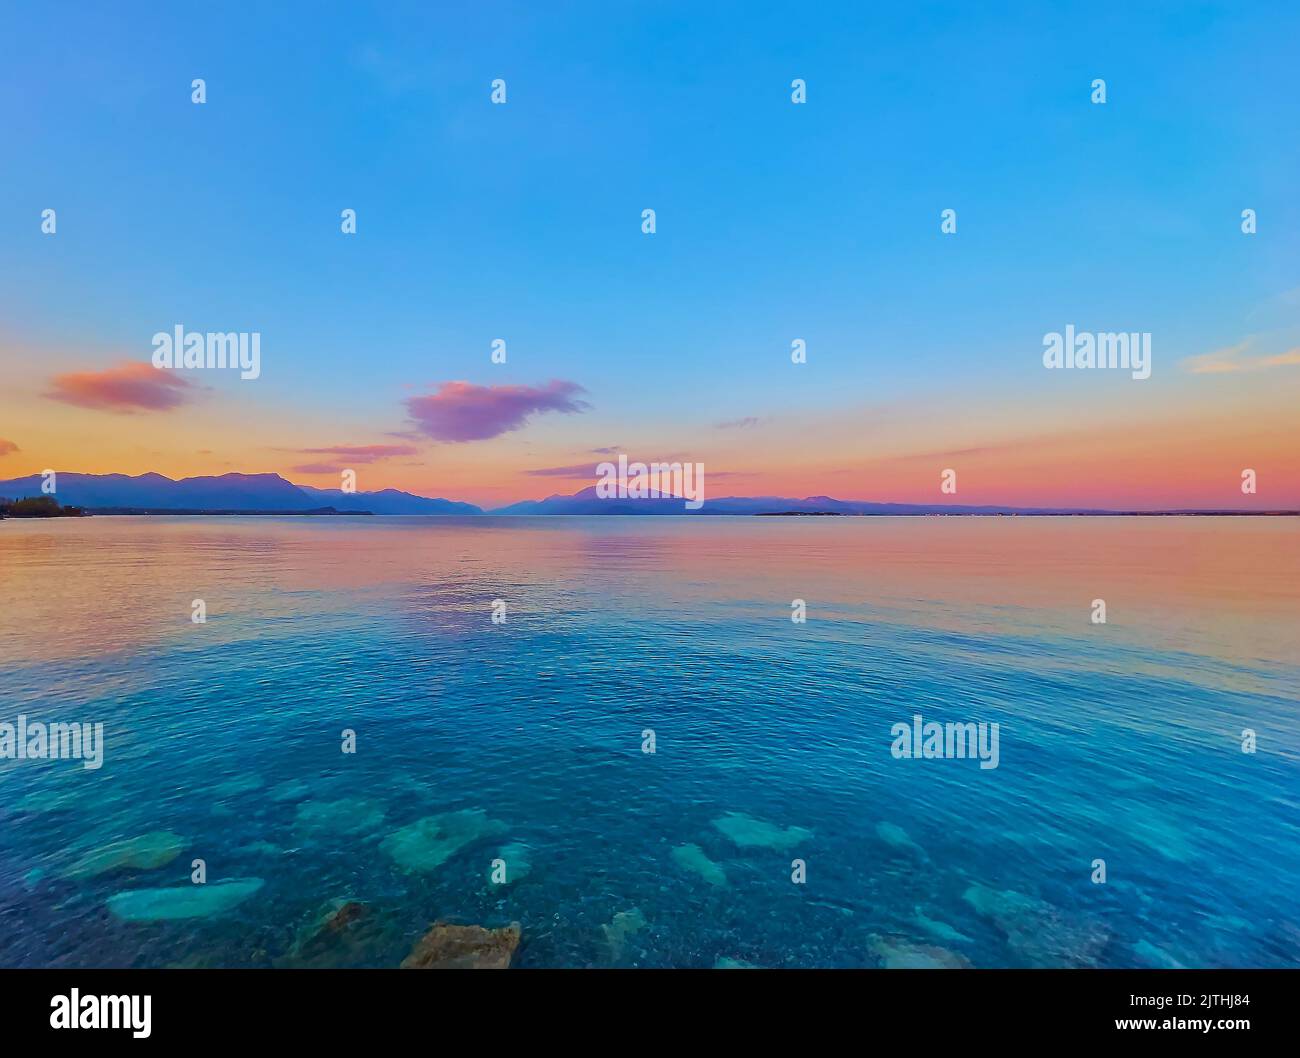 Il pittoresco tramonto sul Lago di Garda con la sua superficie ondulata e le sagome delle Prealpi del Garda sullo sfondo, Desenzano del Garda Foto Stock